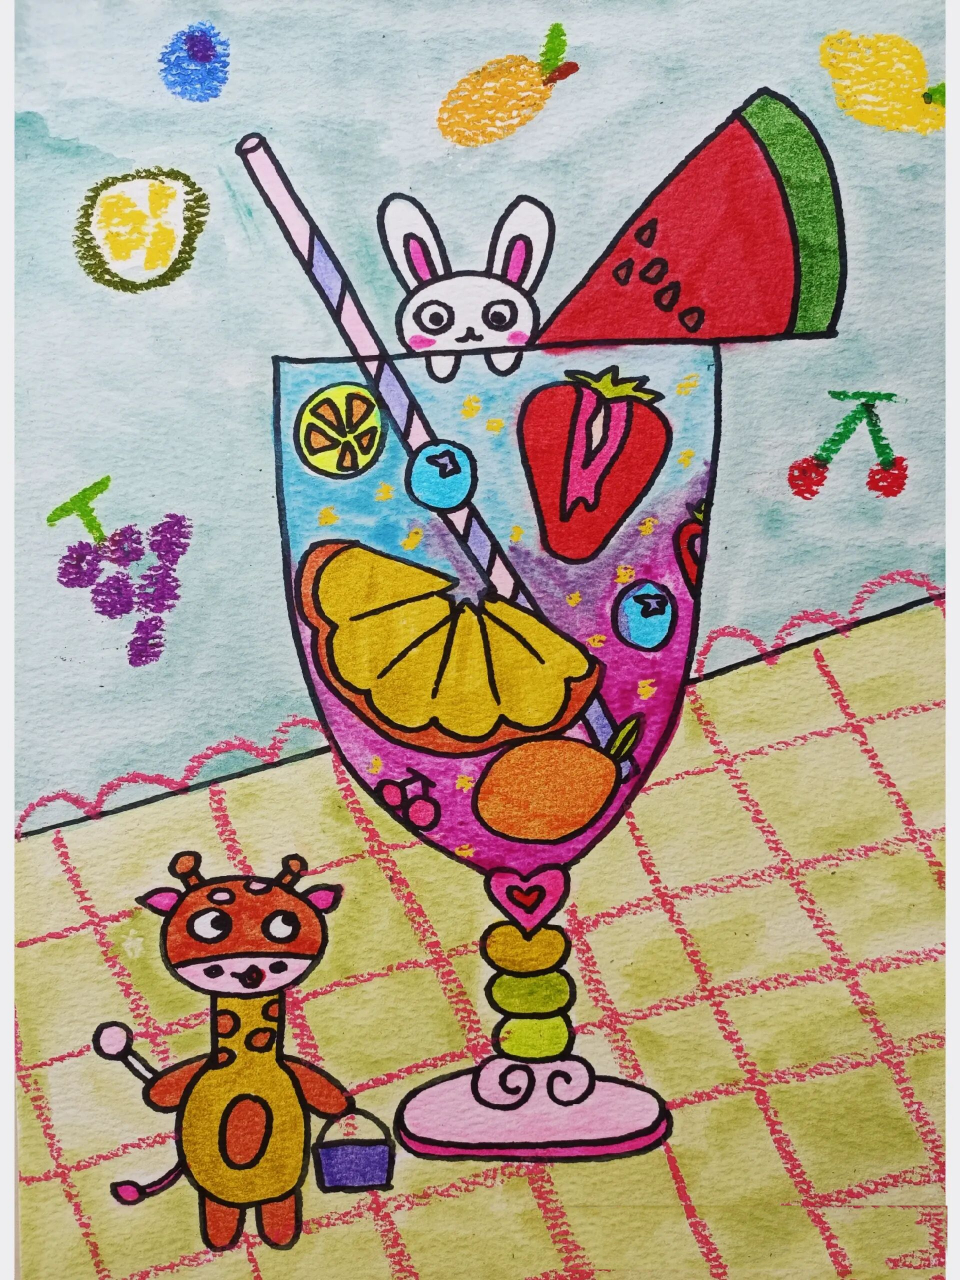 简笔画《开心果汁杯》手动→画完 开心果汁杯,喝完就开心～ 少儿美术